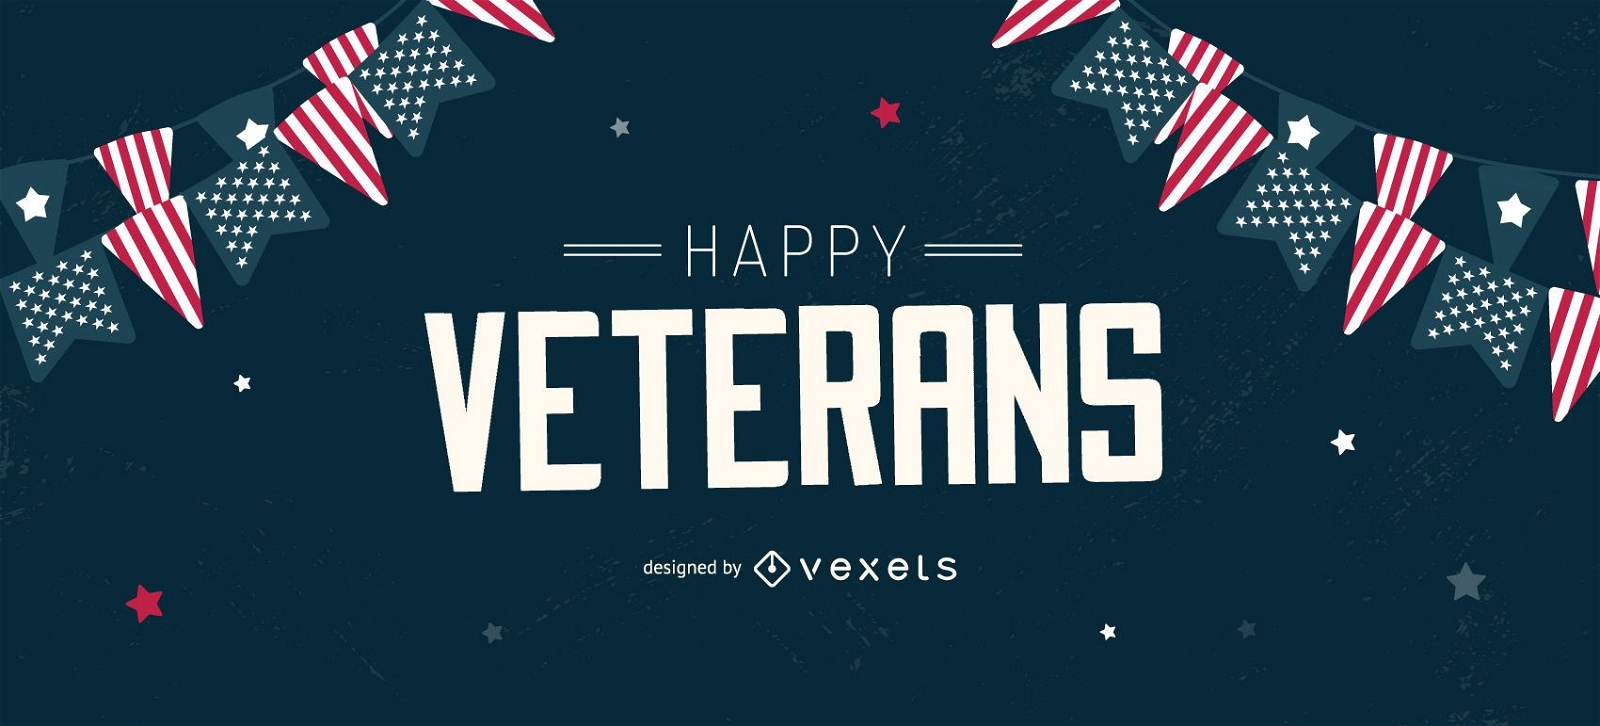 Happy veterans editable slider design